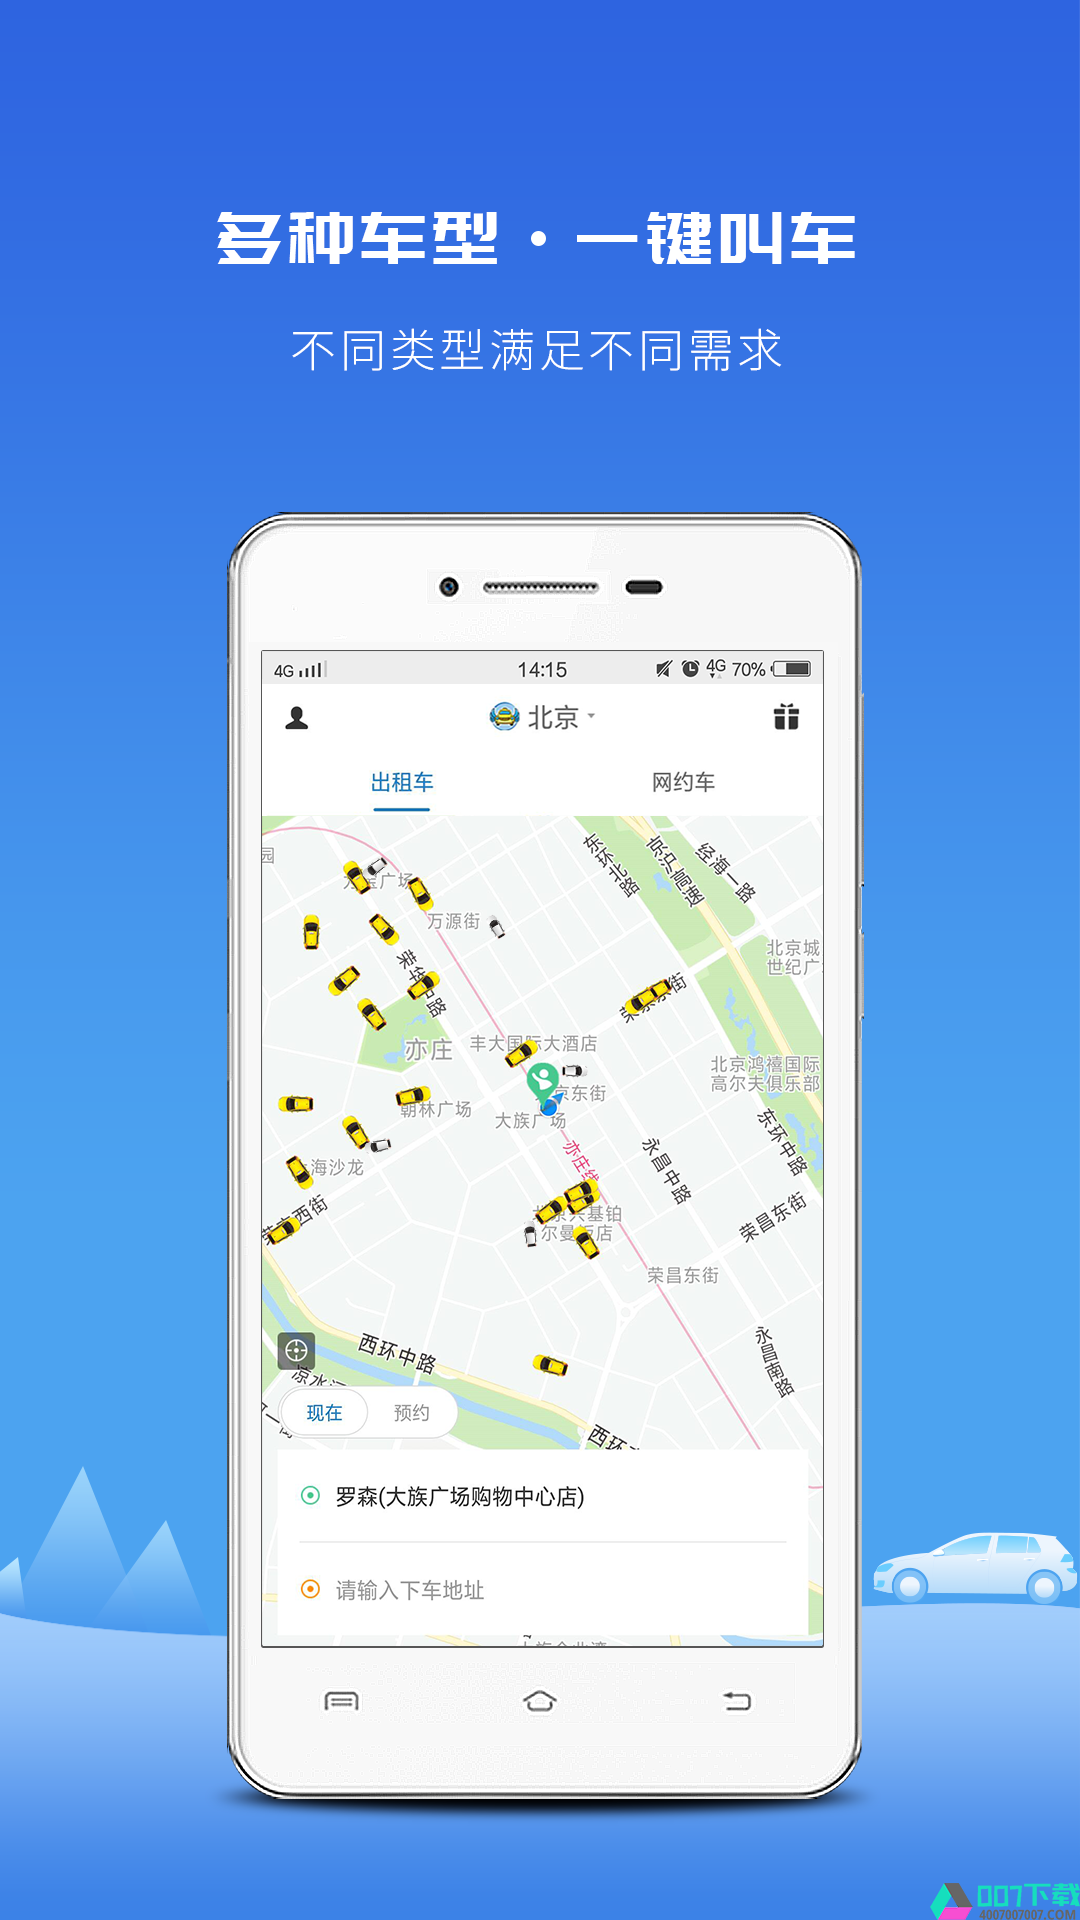 飞嘀打车app下载_飞嘀打车app最新版免费下载